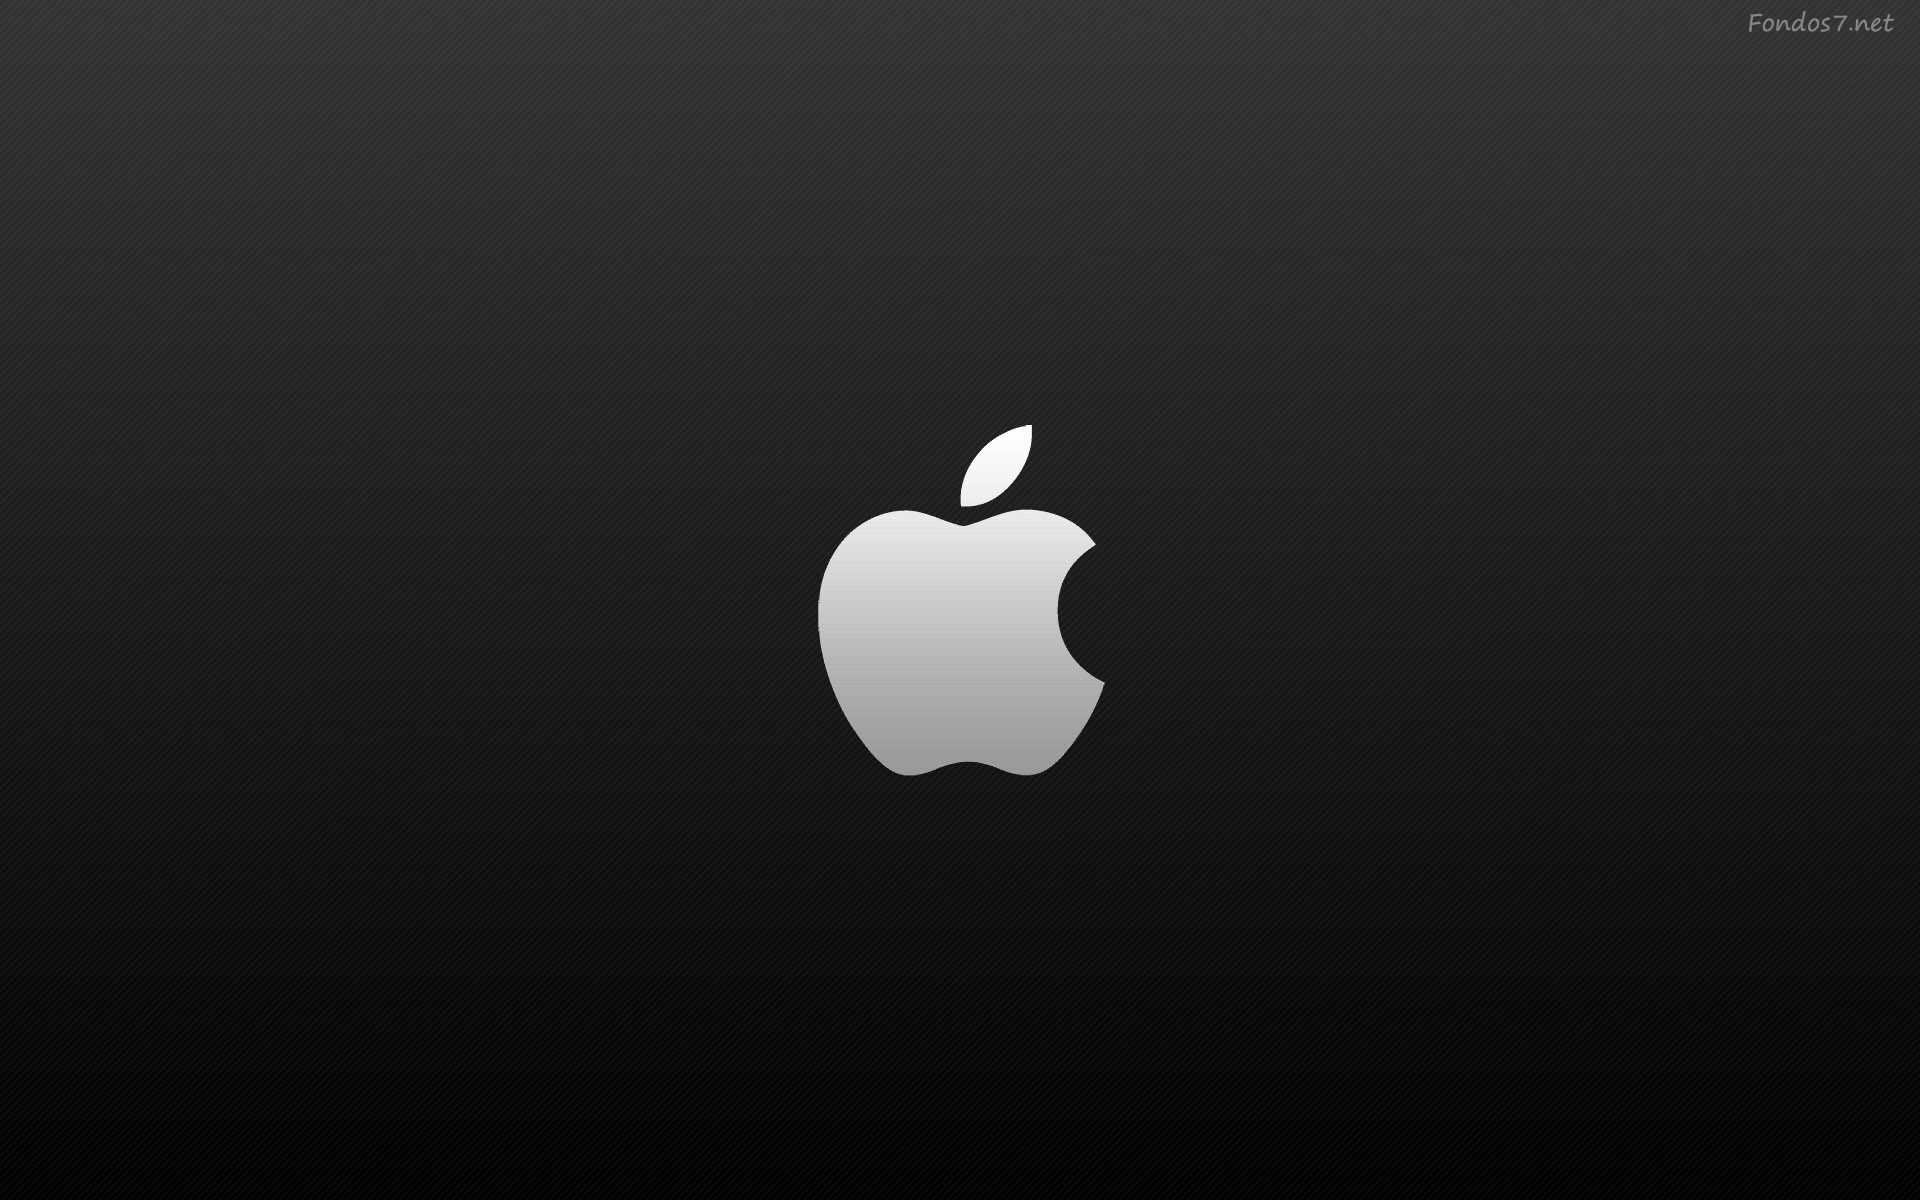 Descargar Fondos de pantalla logo de apple mac hd widescreen Gratis